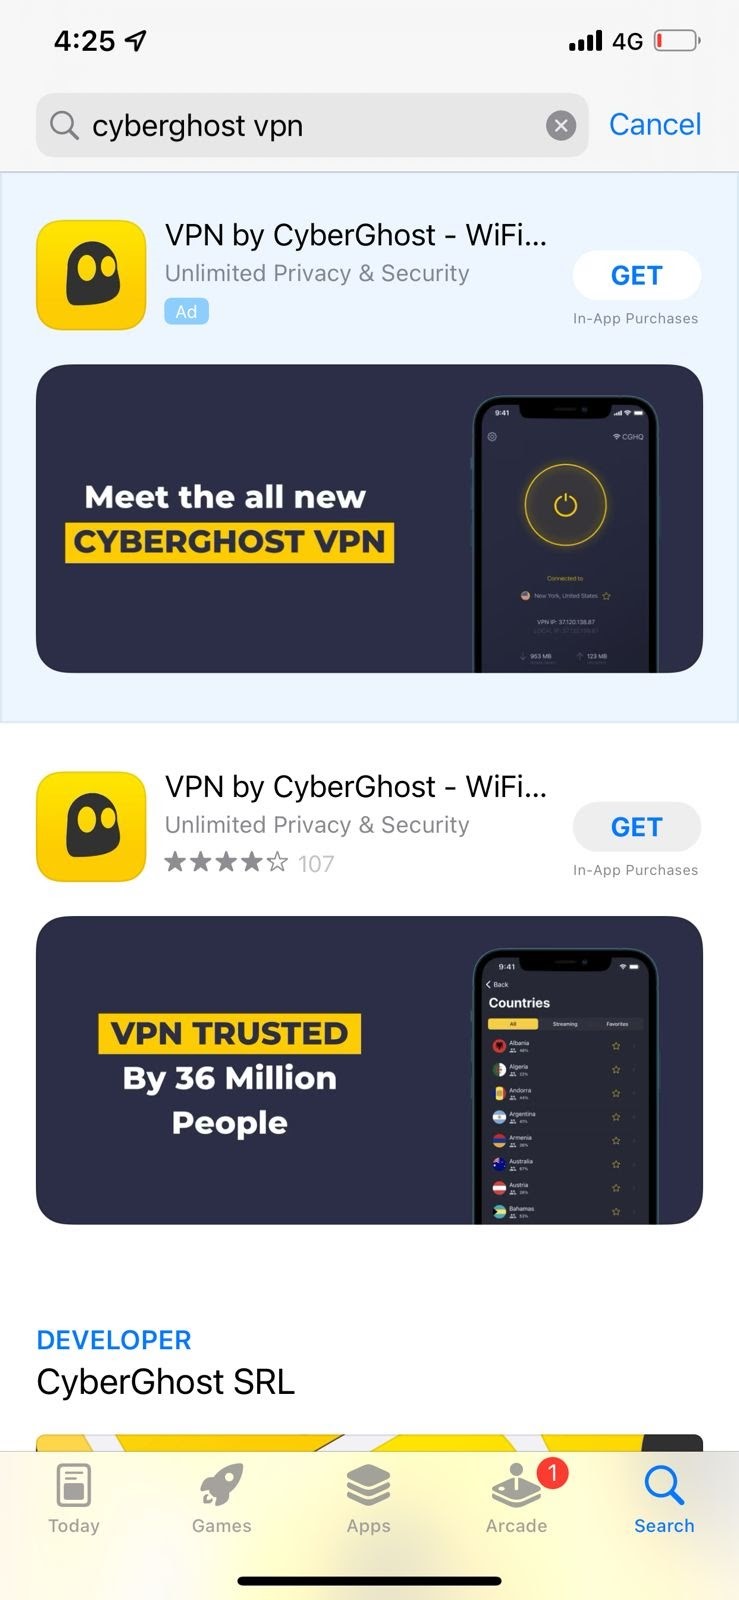  App store displaying CyberGhost VPN iOS app.